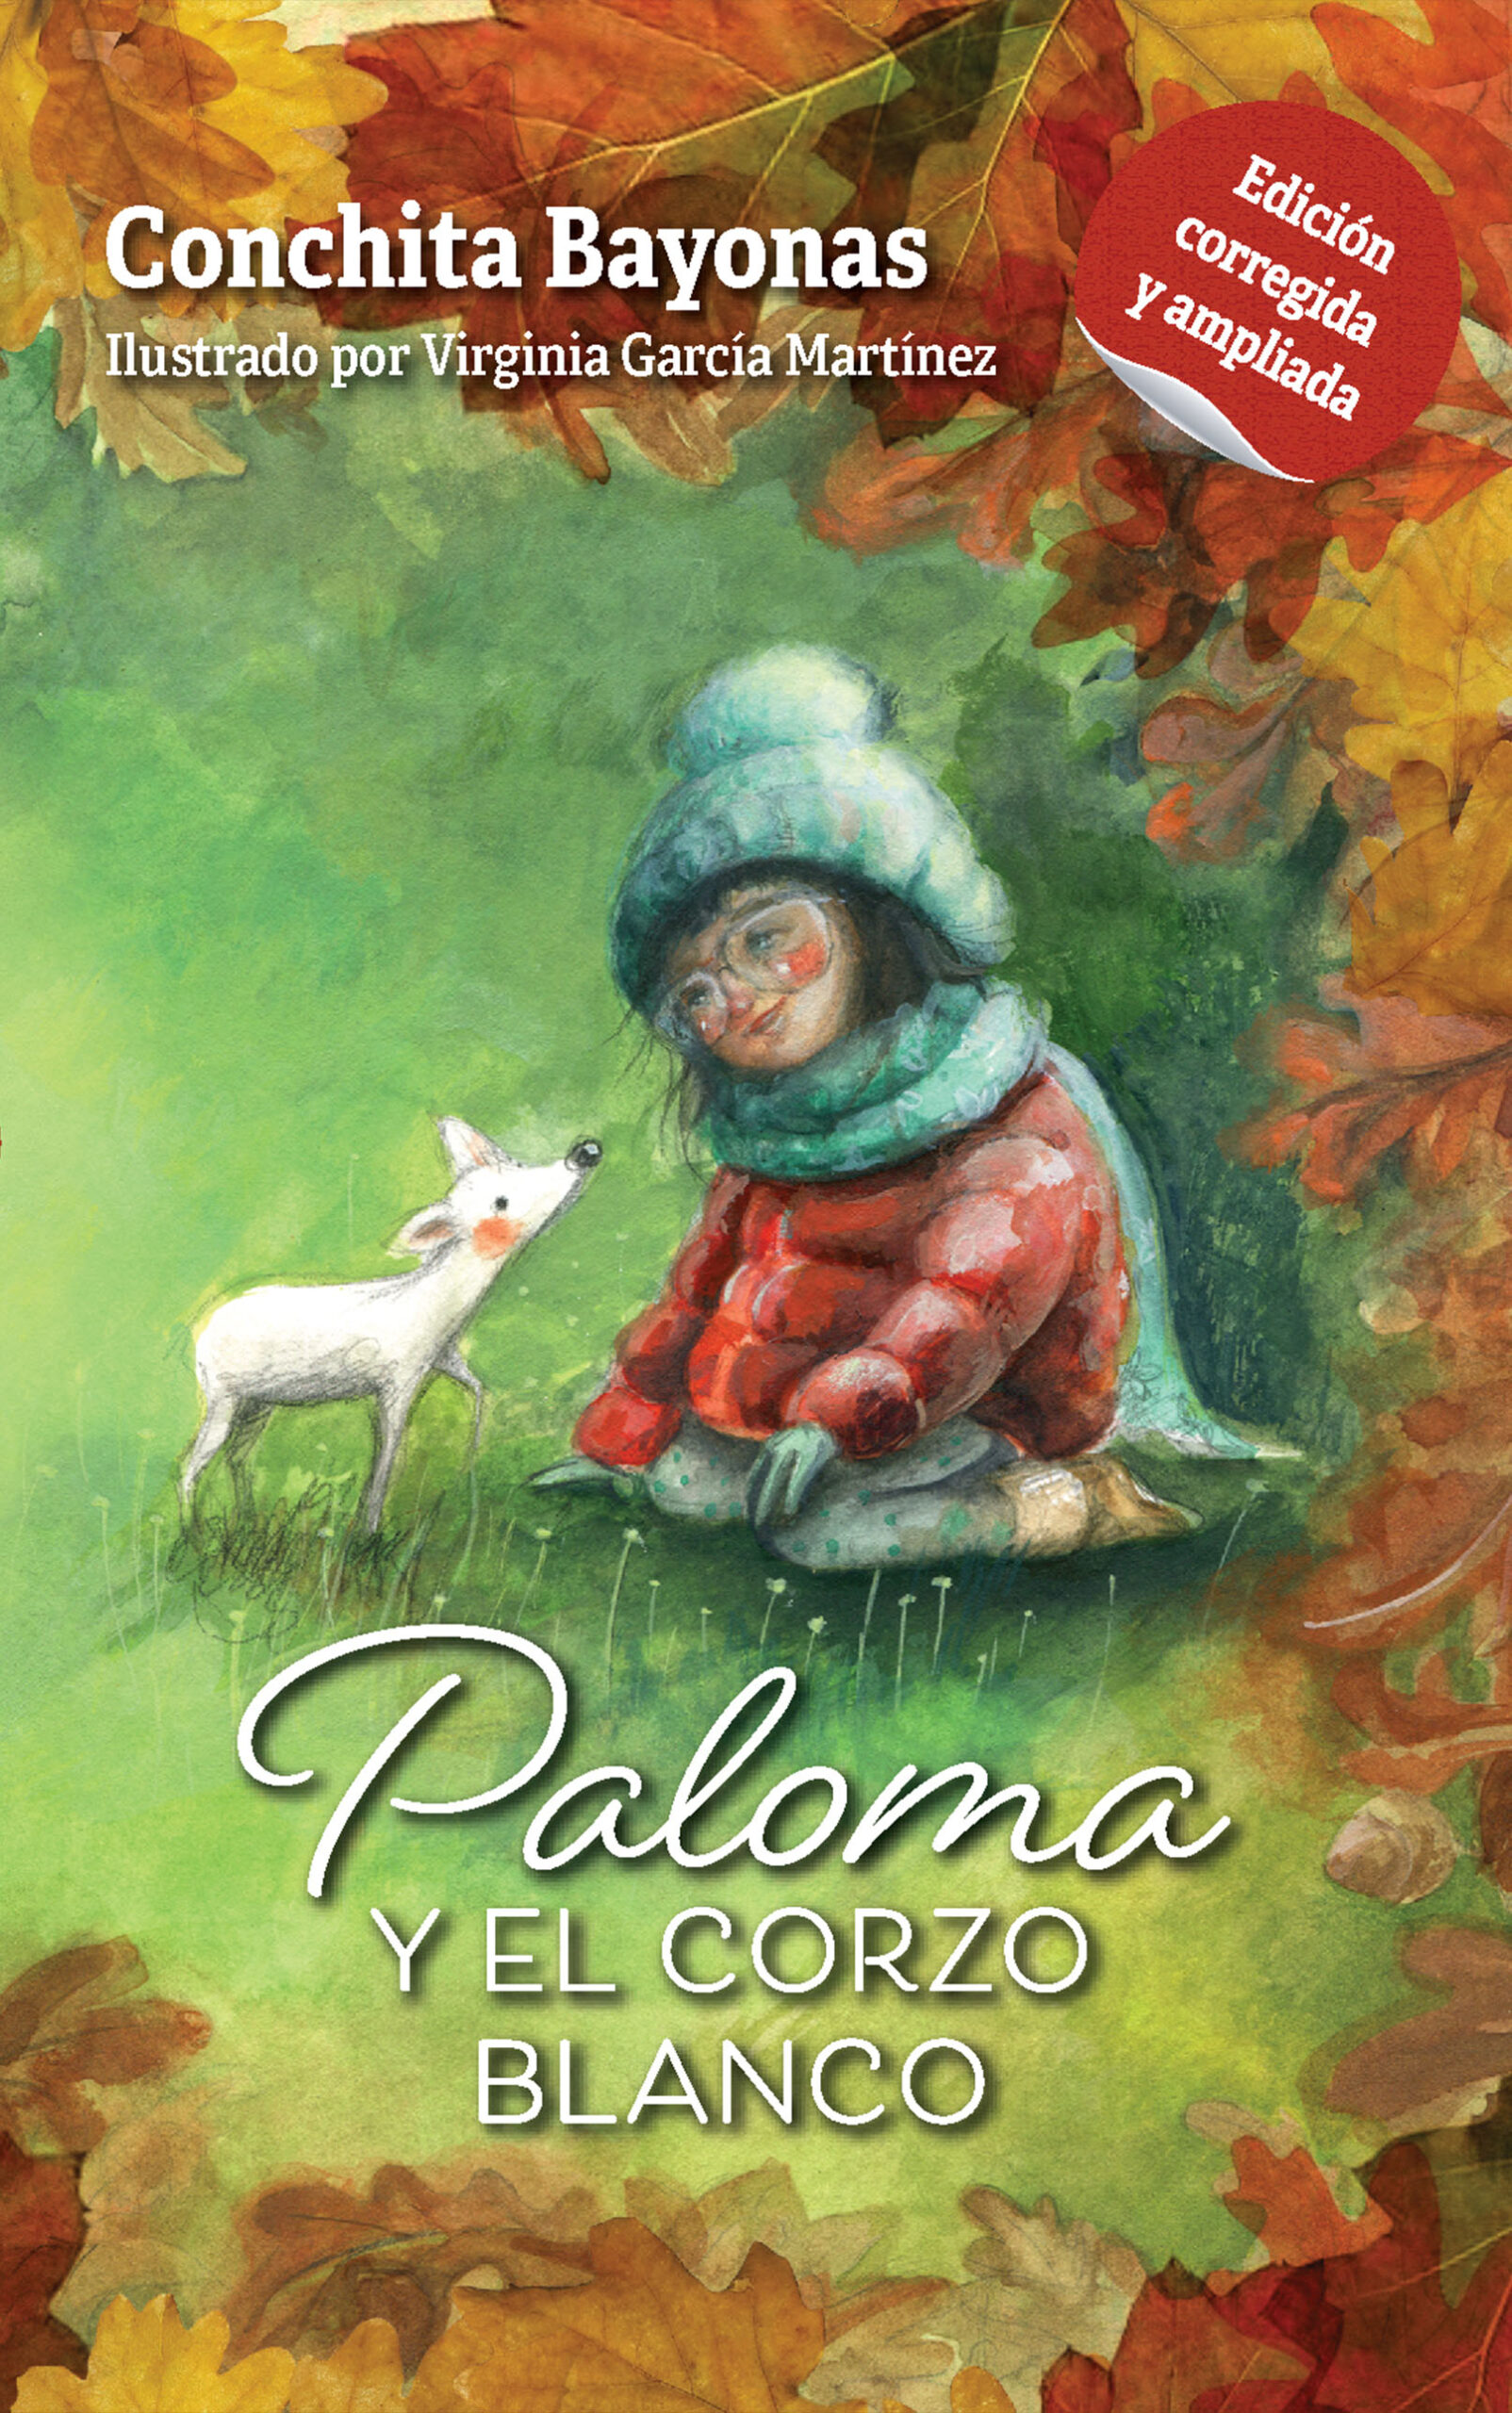 Paloma y el corzo blanco, de Conchita Bayonas